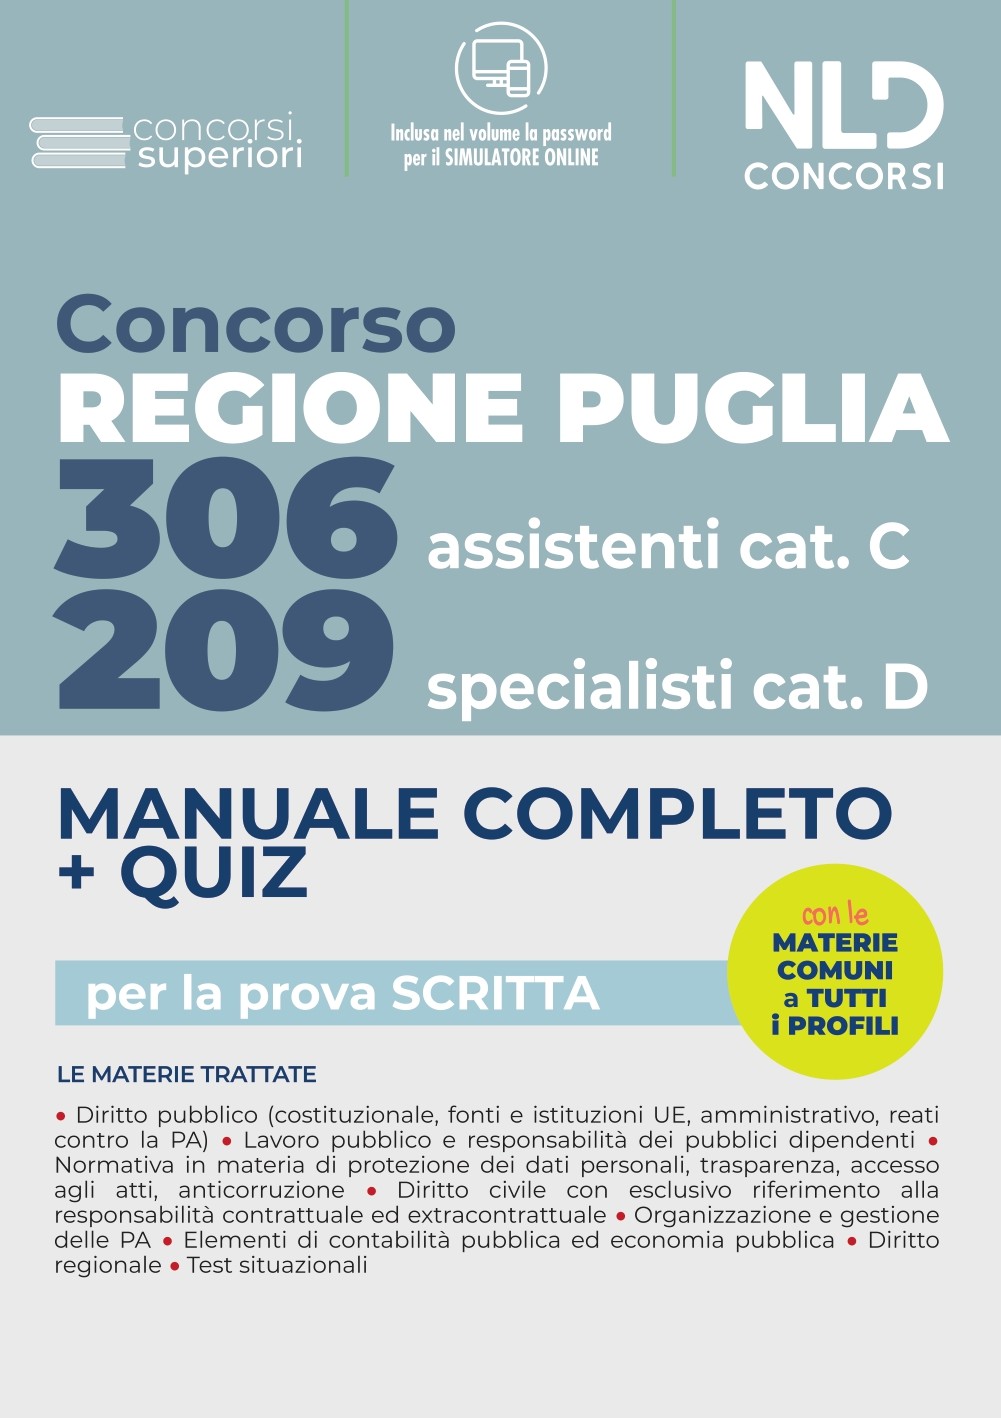 Concorso Regione Puglia 2022: Manuale Completo + Quiz per 209 Specialisti cat. D + 306 Assistenti Cat. CVari profili